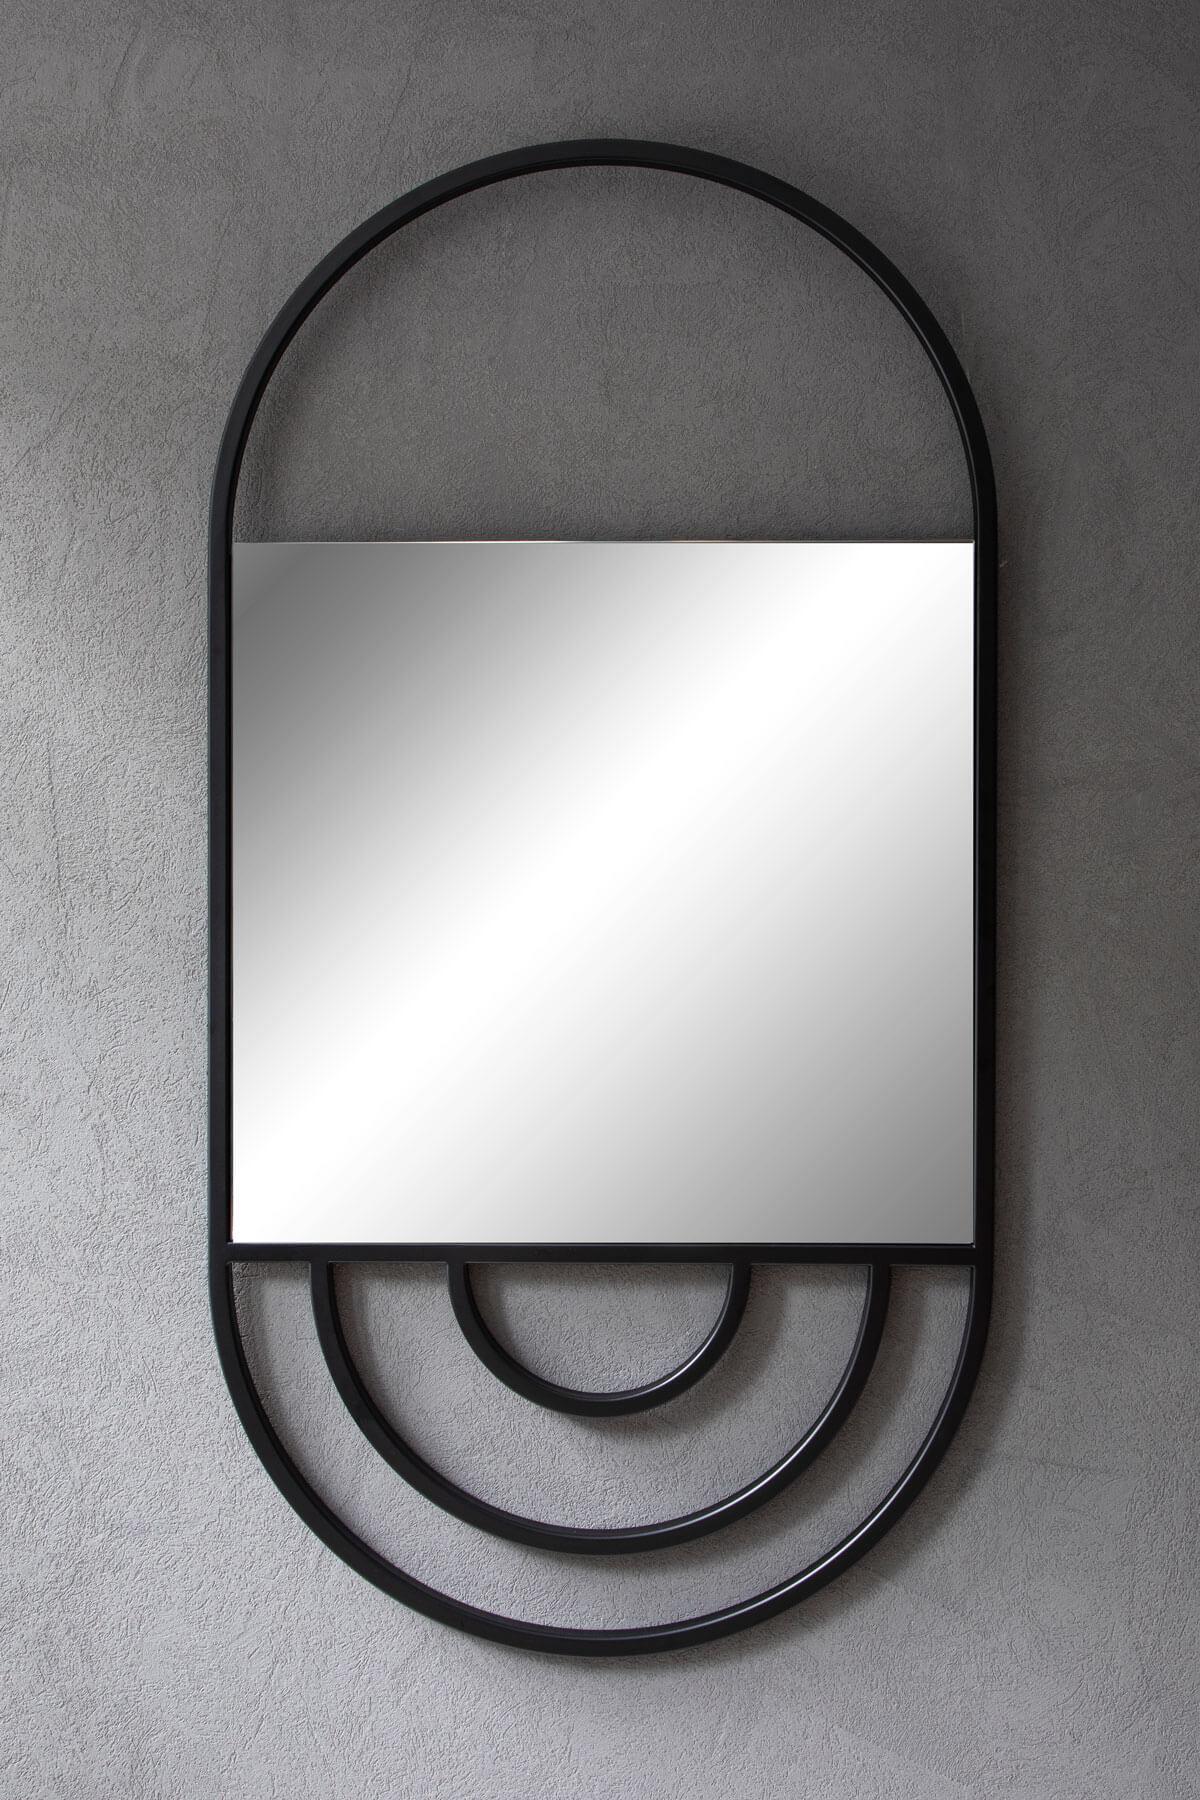 Der GATSBY MIRROR mit seinen runden Kurven und den schwarzen Details rund um den Spiegel bietet Ihnen die Möglichkeit, sich selbst besser zu betrachten.

- Schwarz lackiertes Metall
- Klarer Spiegel.

**Die Vorlaufzeit beträgt 3 Wochen.

VERWENDUNG